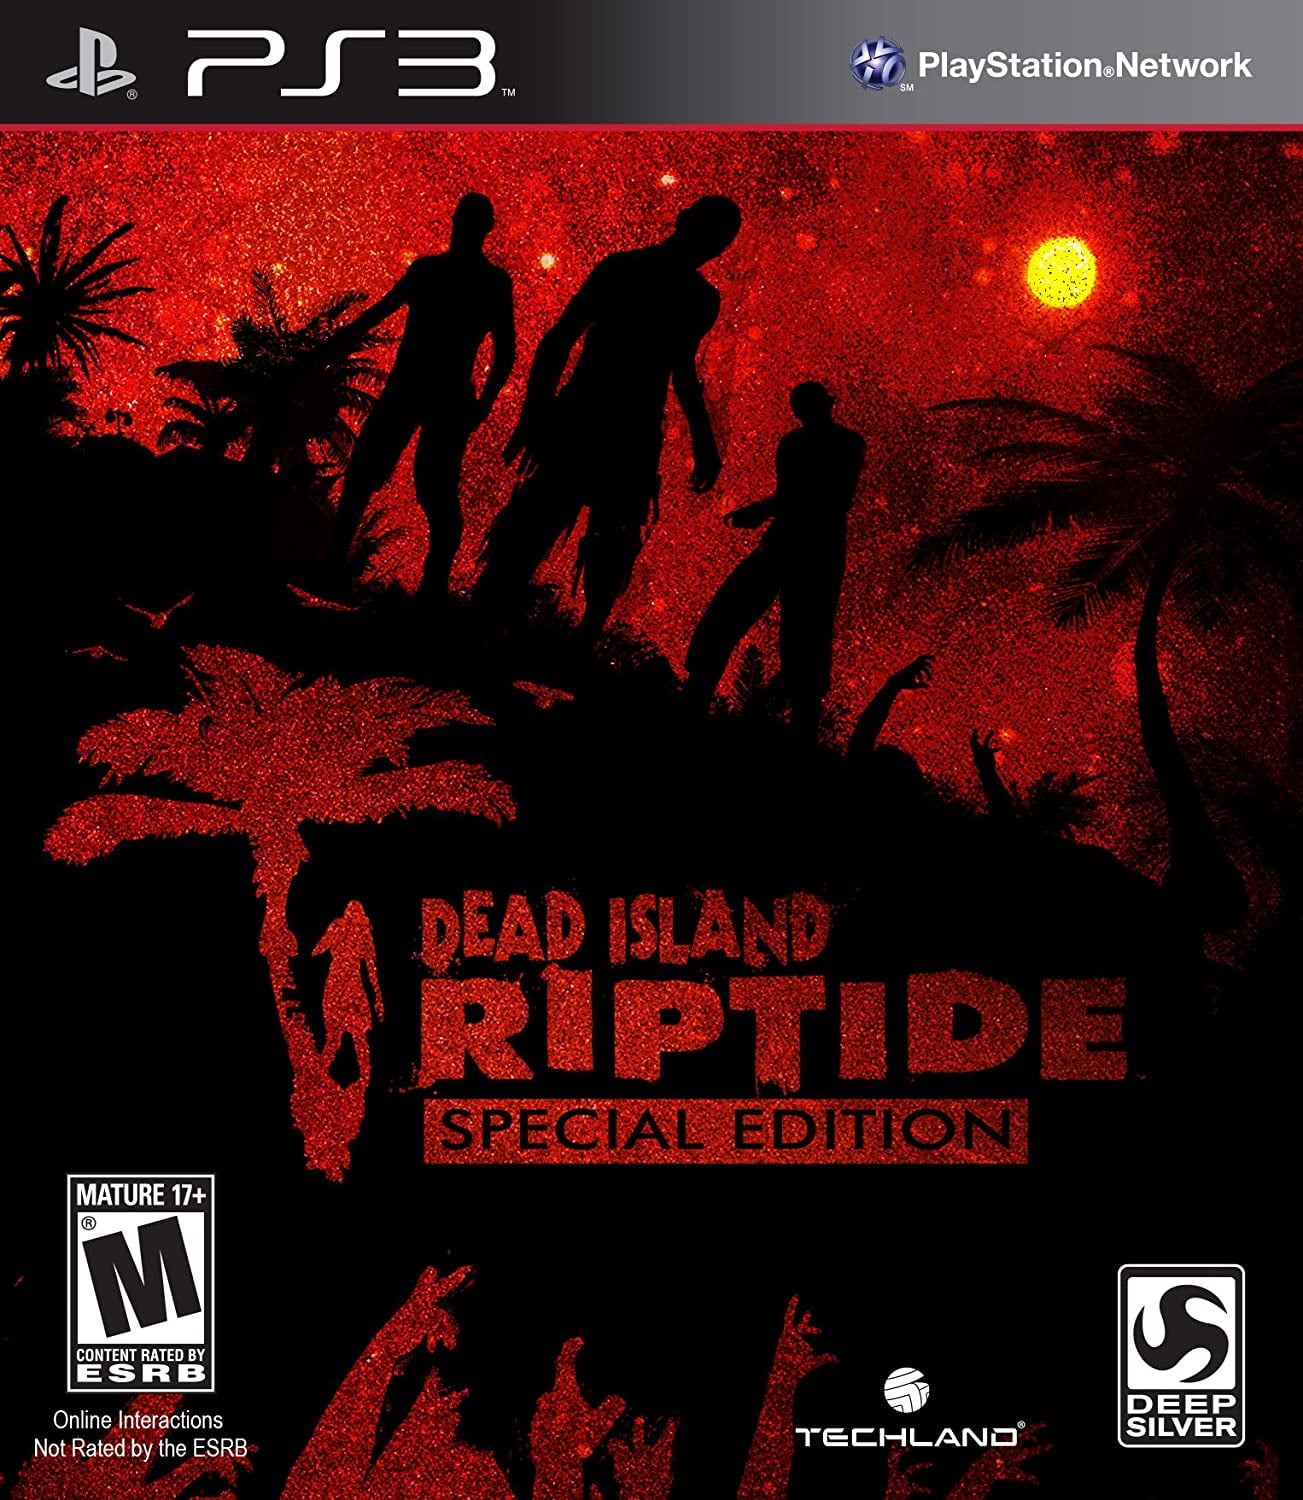 Dead Island Riptide PS3